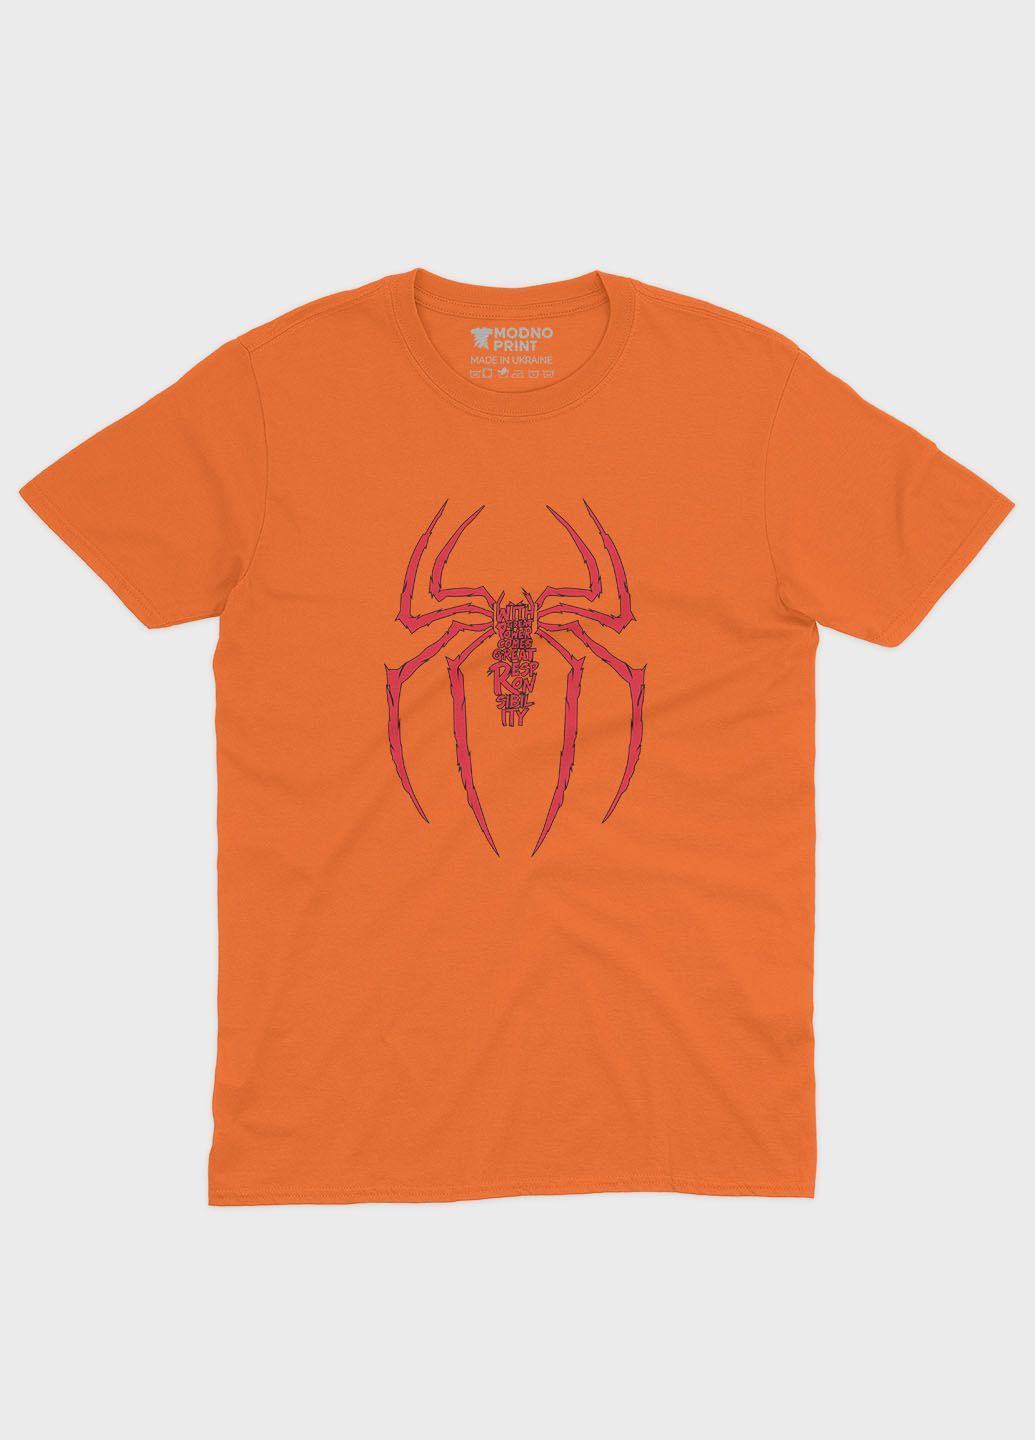 Оранжевая демисезонная футболка для мальчика с принтом супергероя - человек-паук (ts001-1-ora-006-014-046-b) Modno